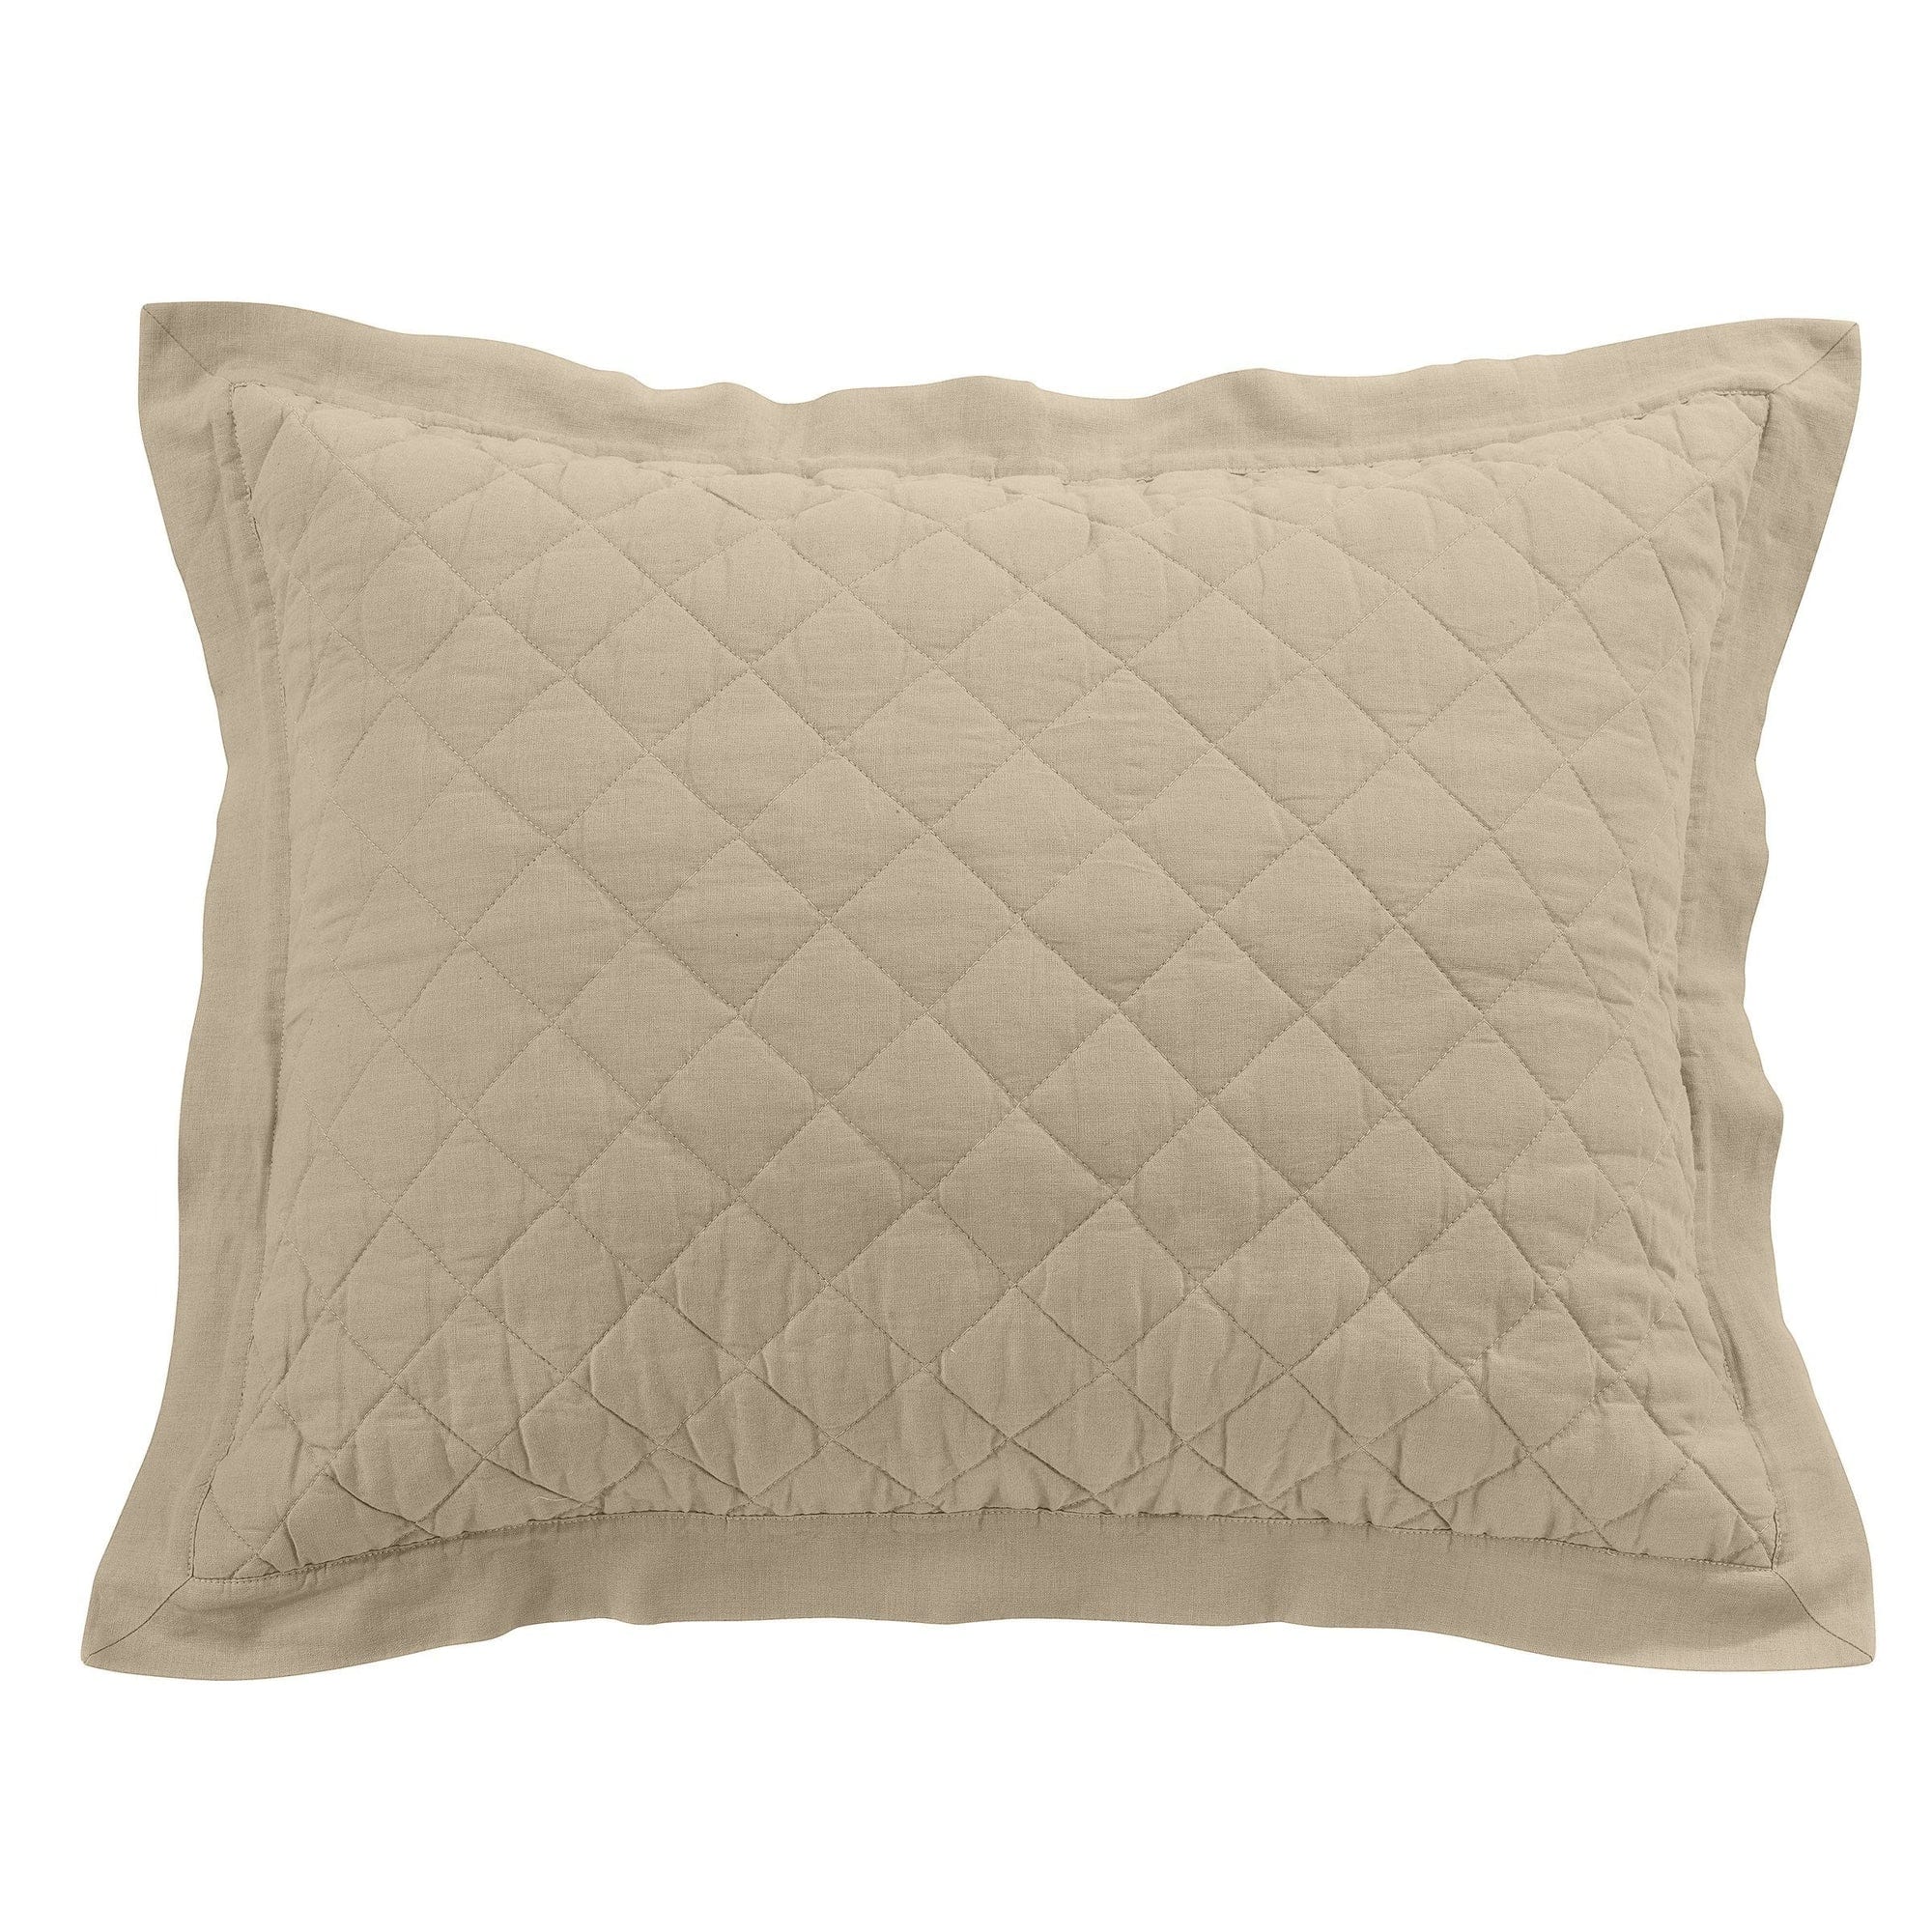 Linen Cotton Diamond Quilted Pillow Sham Standard / Light Tan Sham